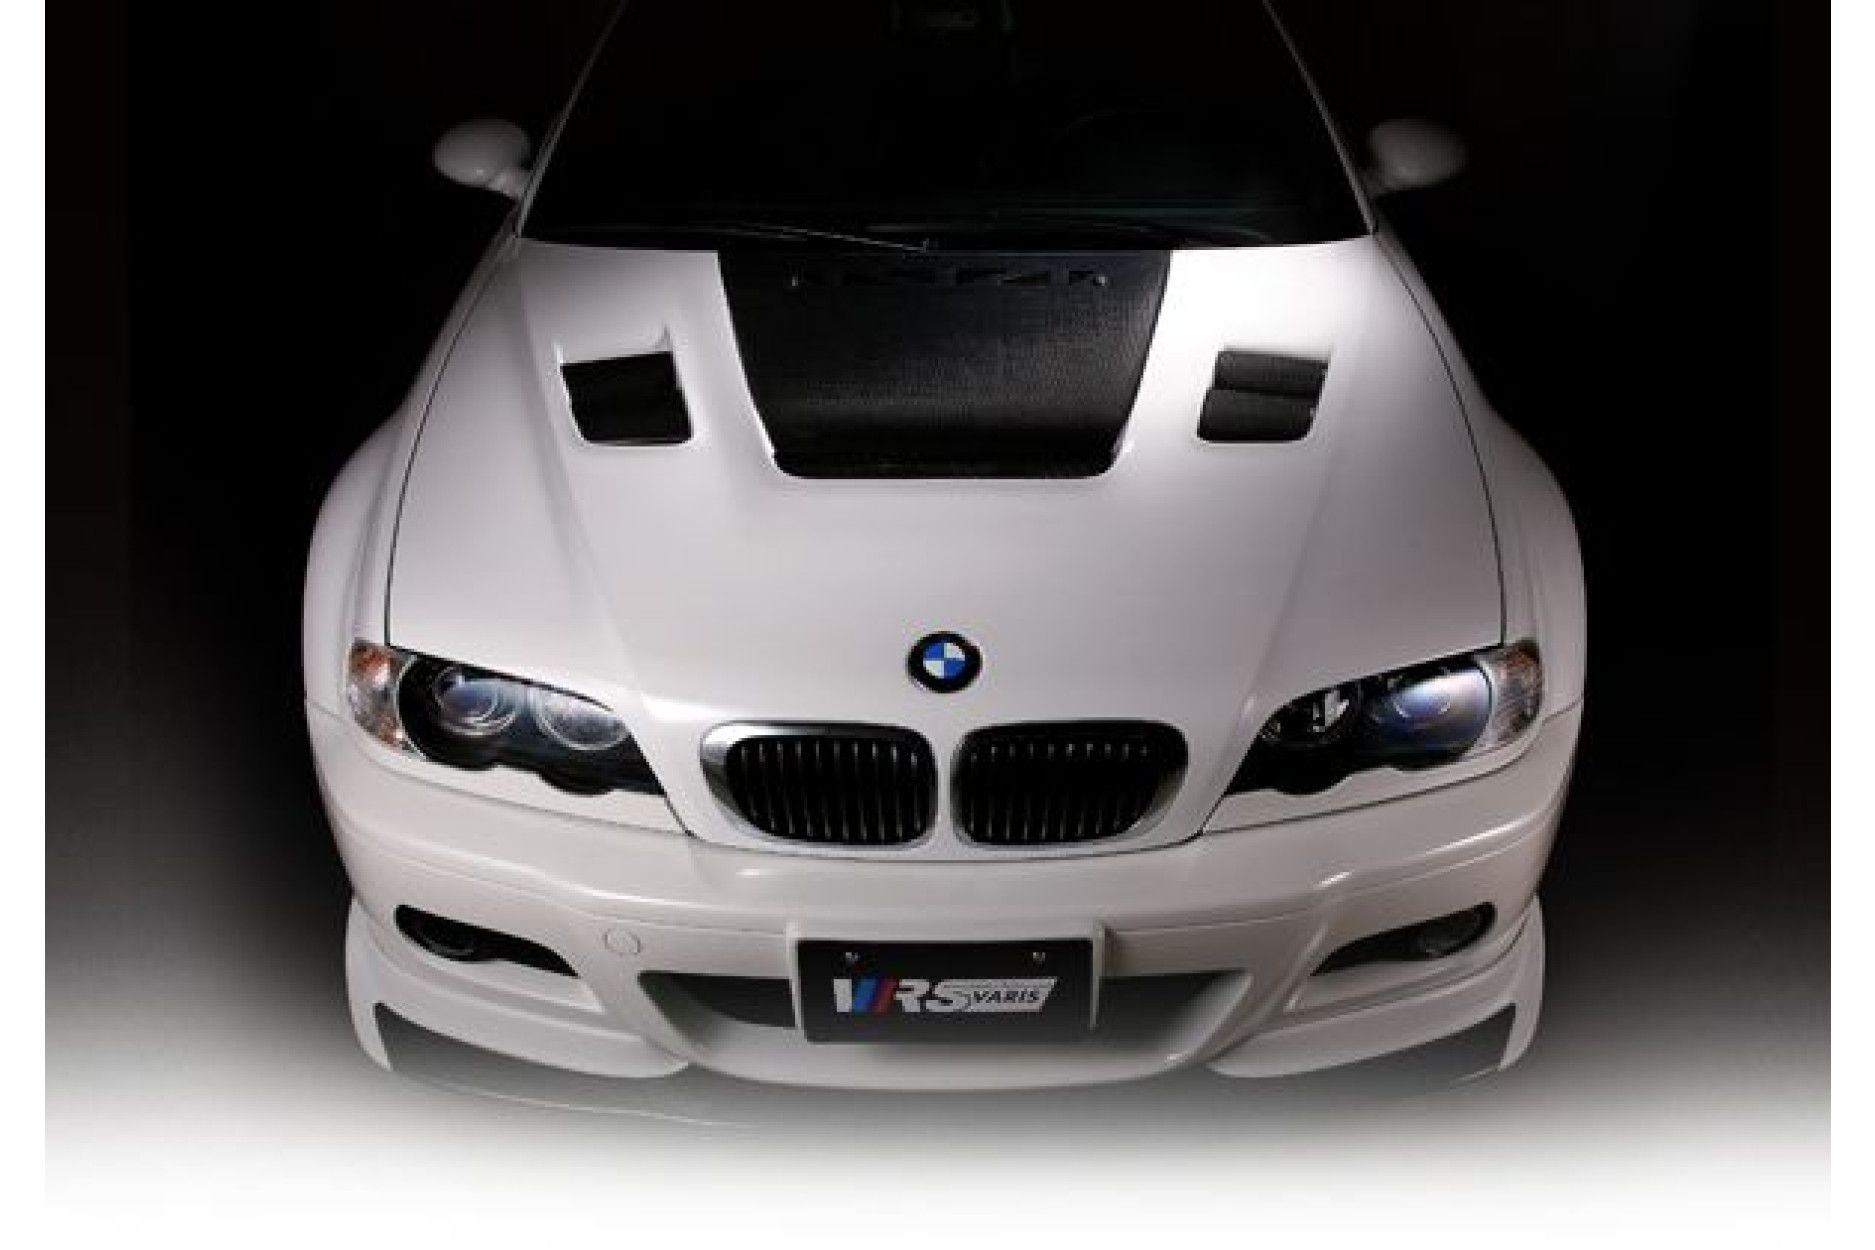 Varis Carbon Cooling Motorhaube für BMW E46 M3 - online kaufen bei CFD